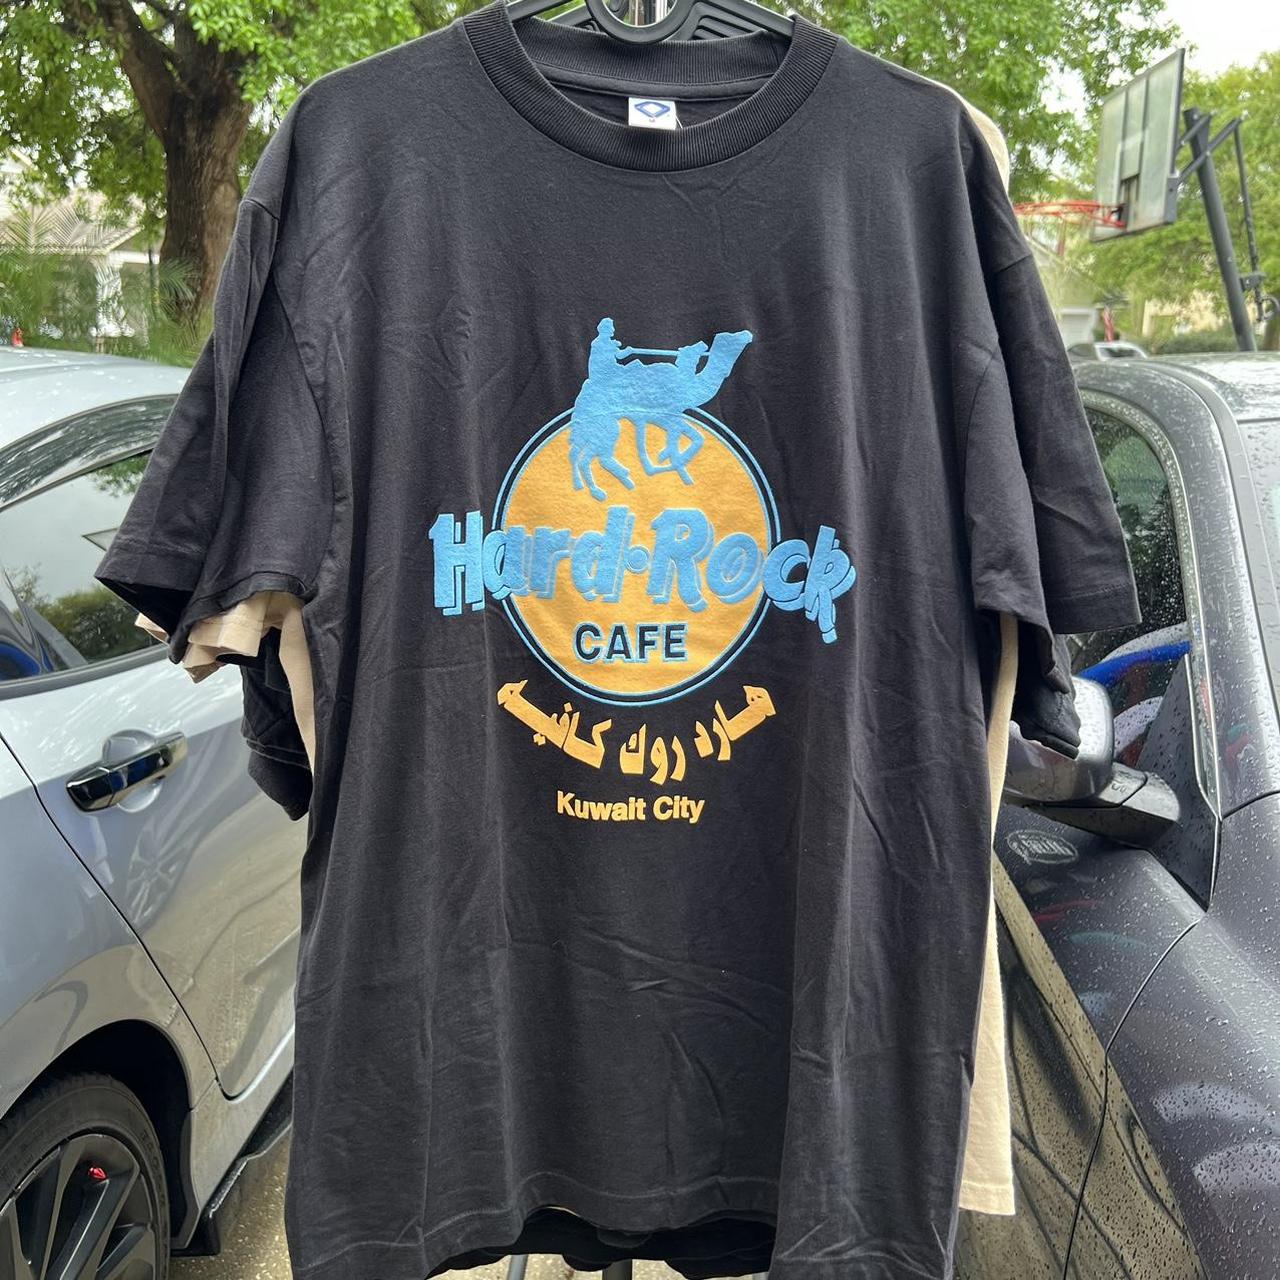 Hard Rock Cafe Men's Black T-shirt